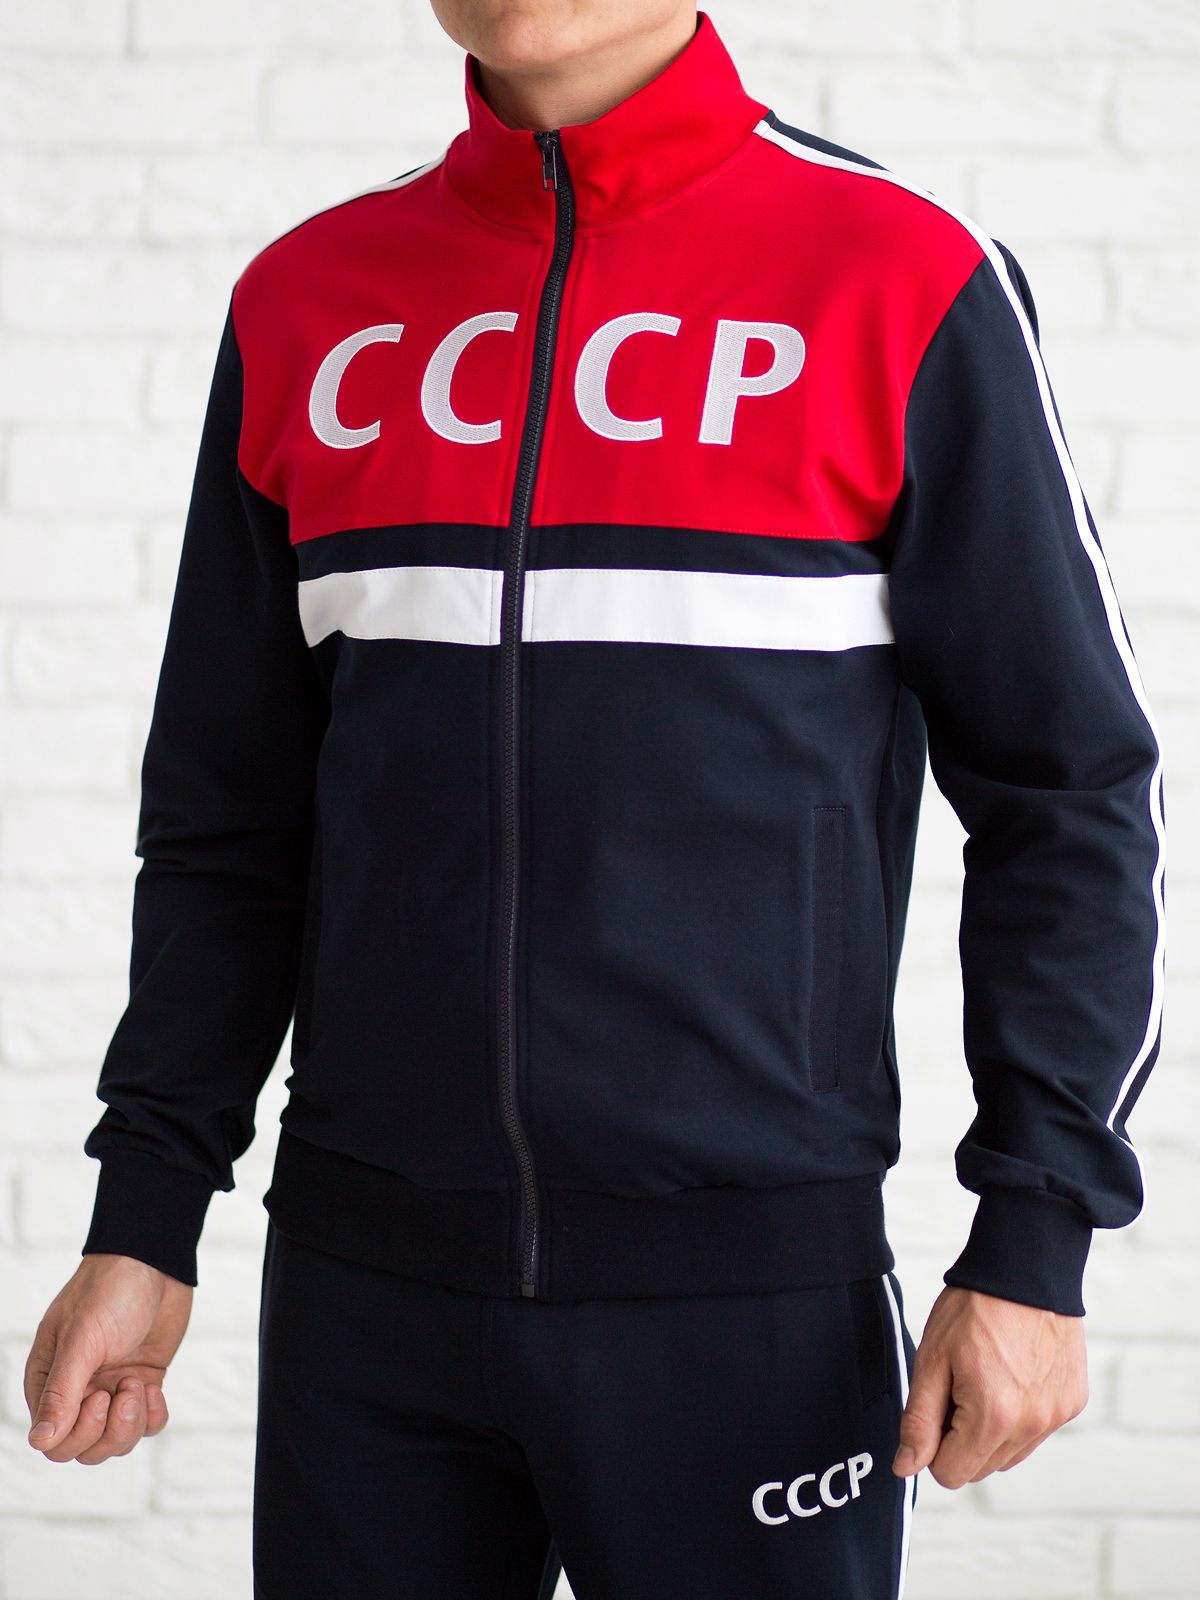 Советский спортивный костюм